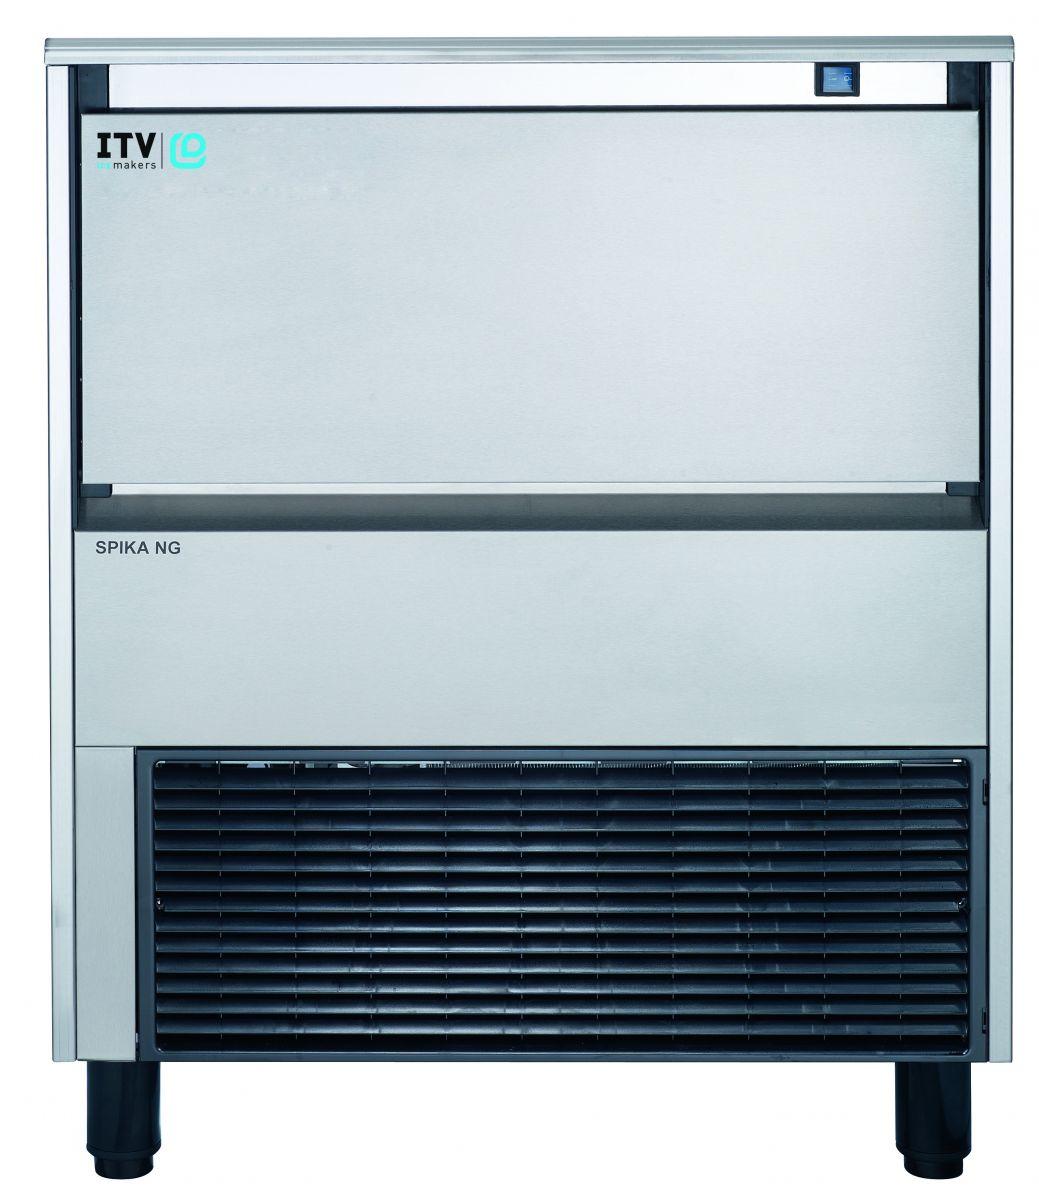 Льдогенератор ITV, модель SPIKA NG140